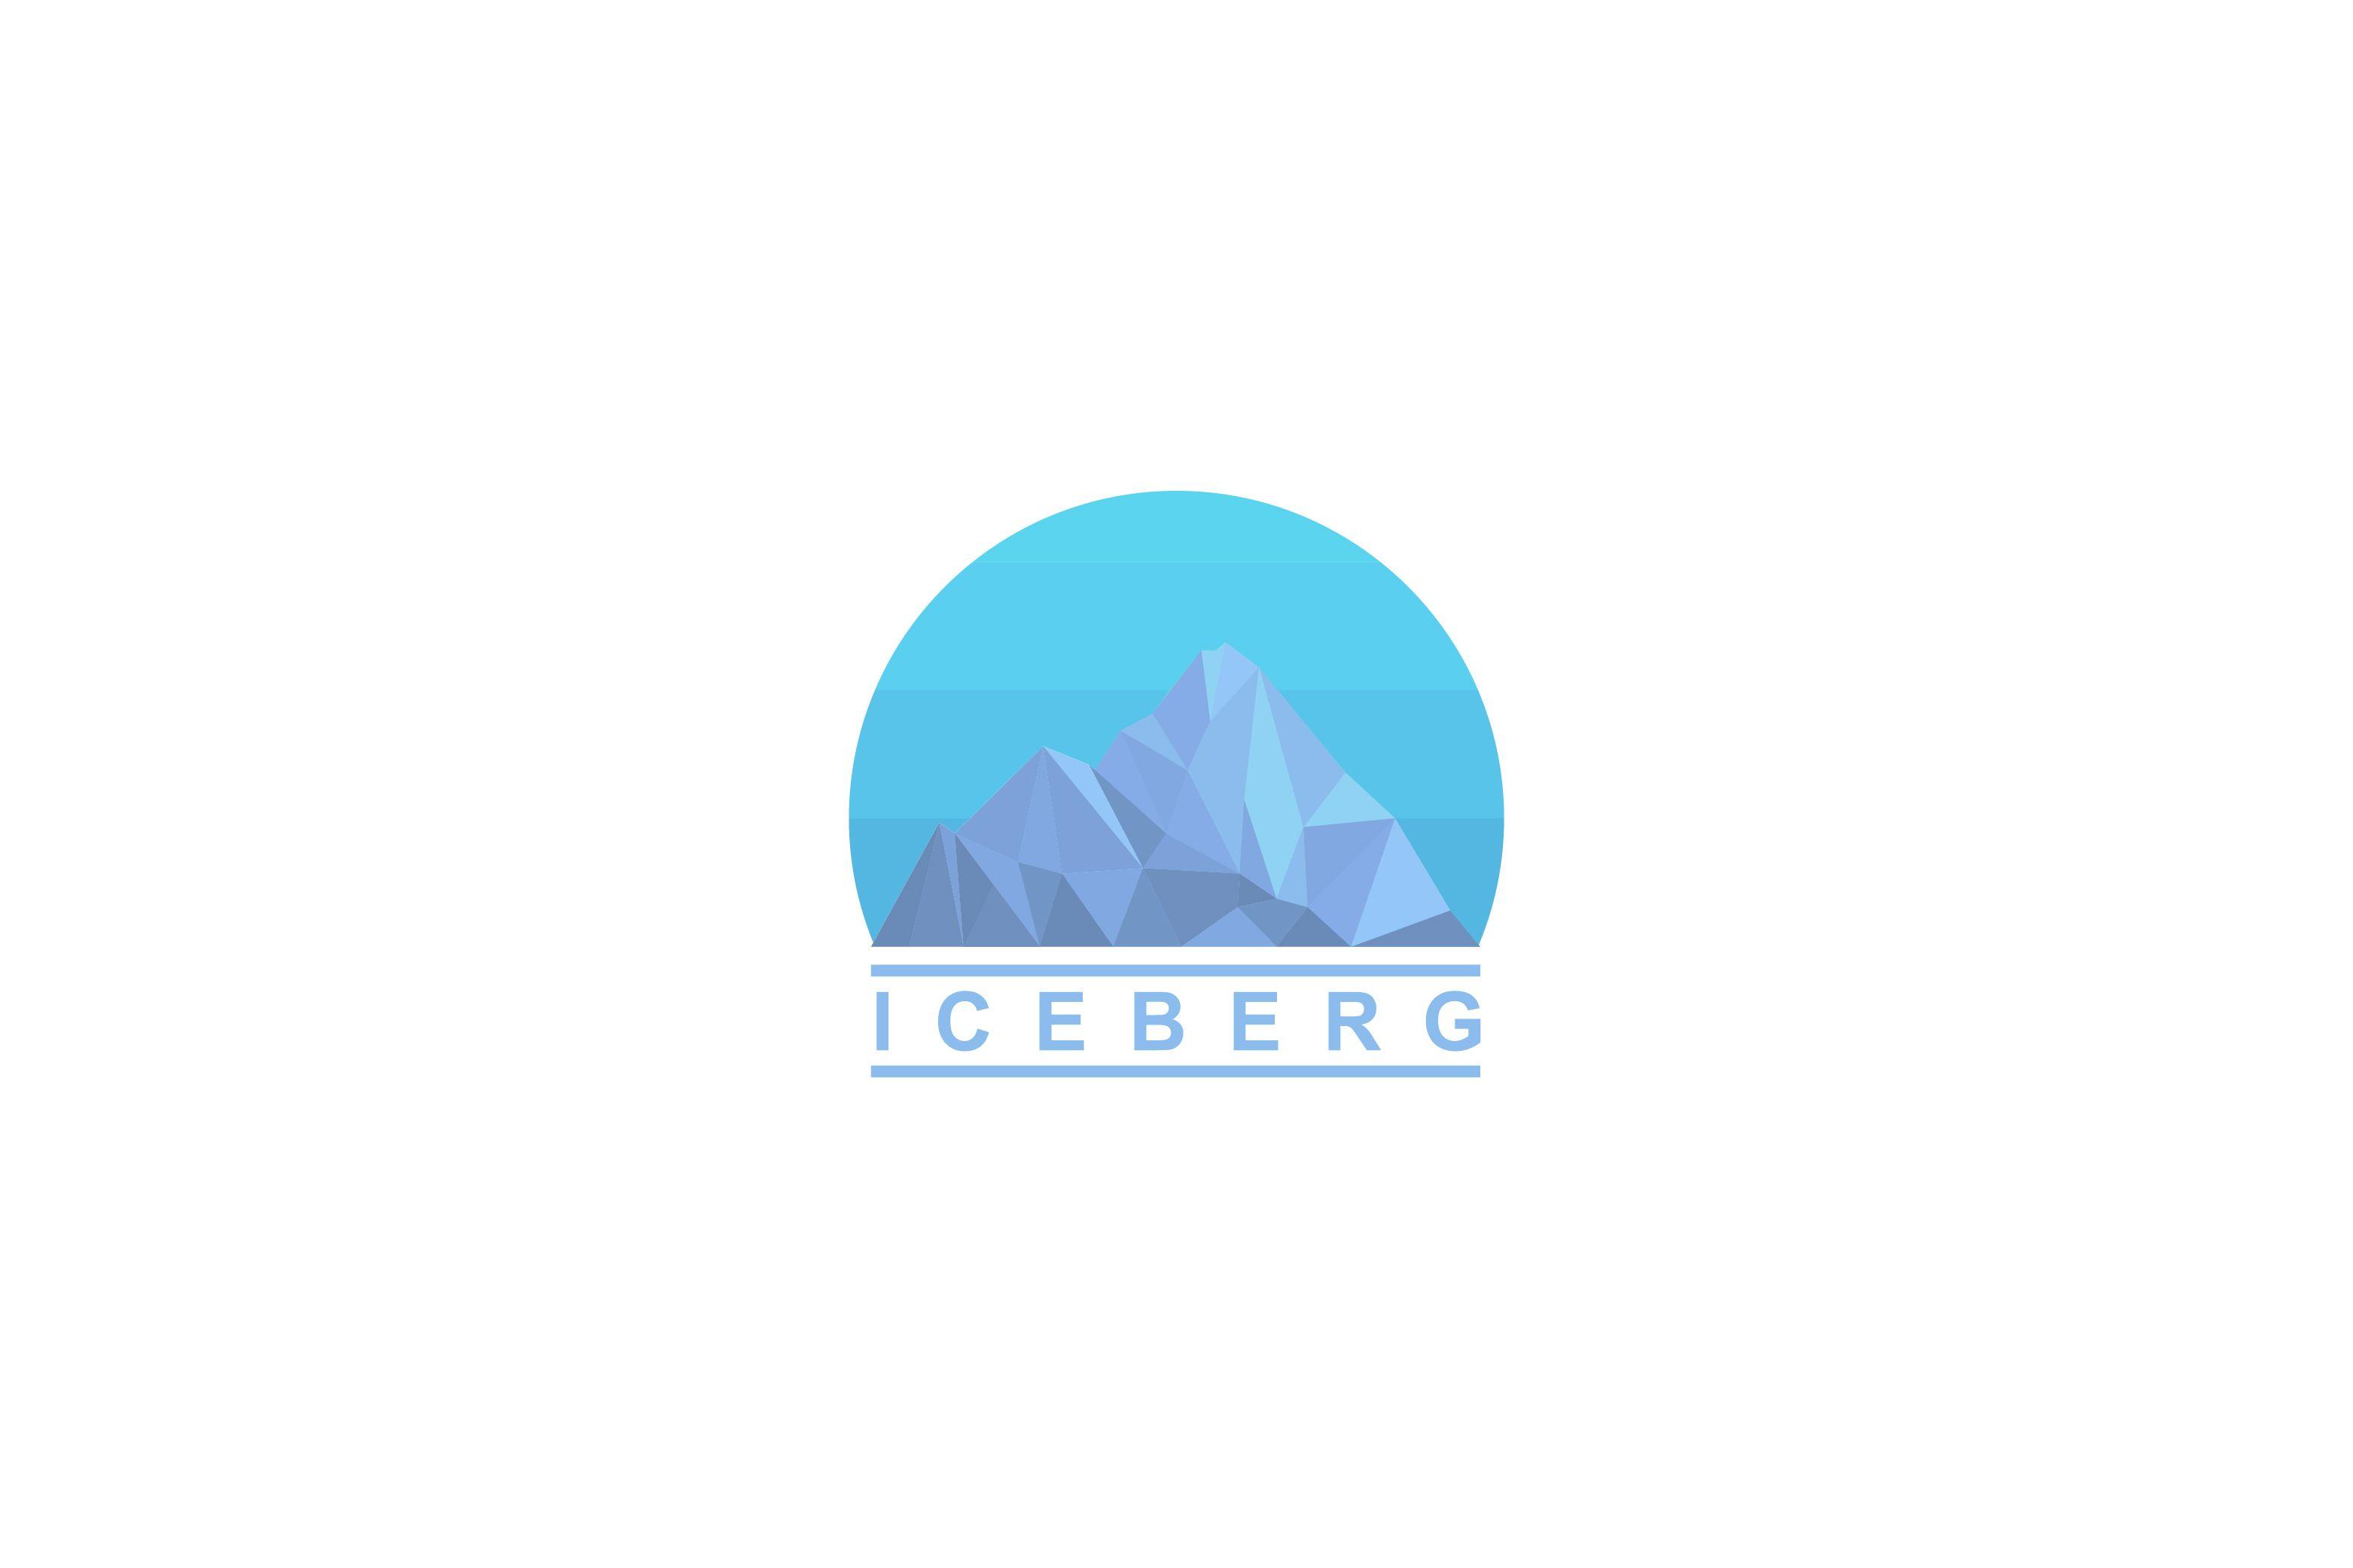 Iceberg Logo - Iceberg vector logo design